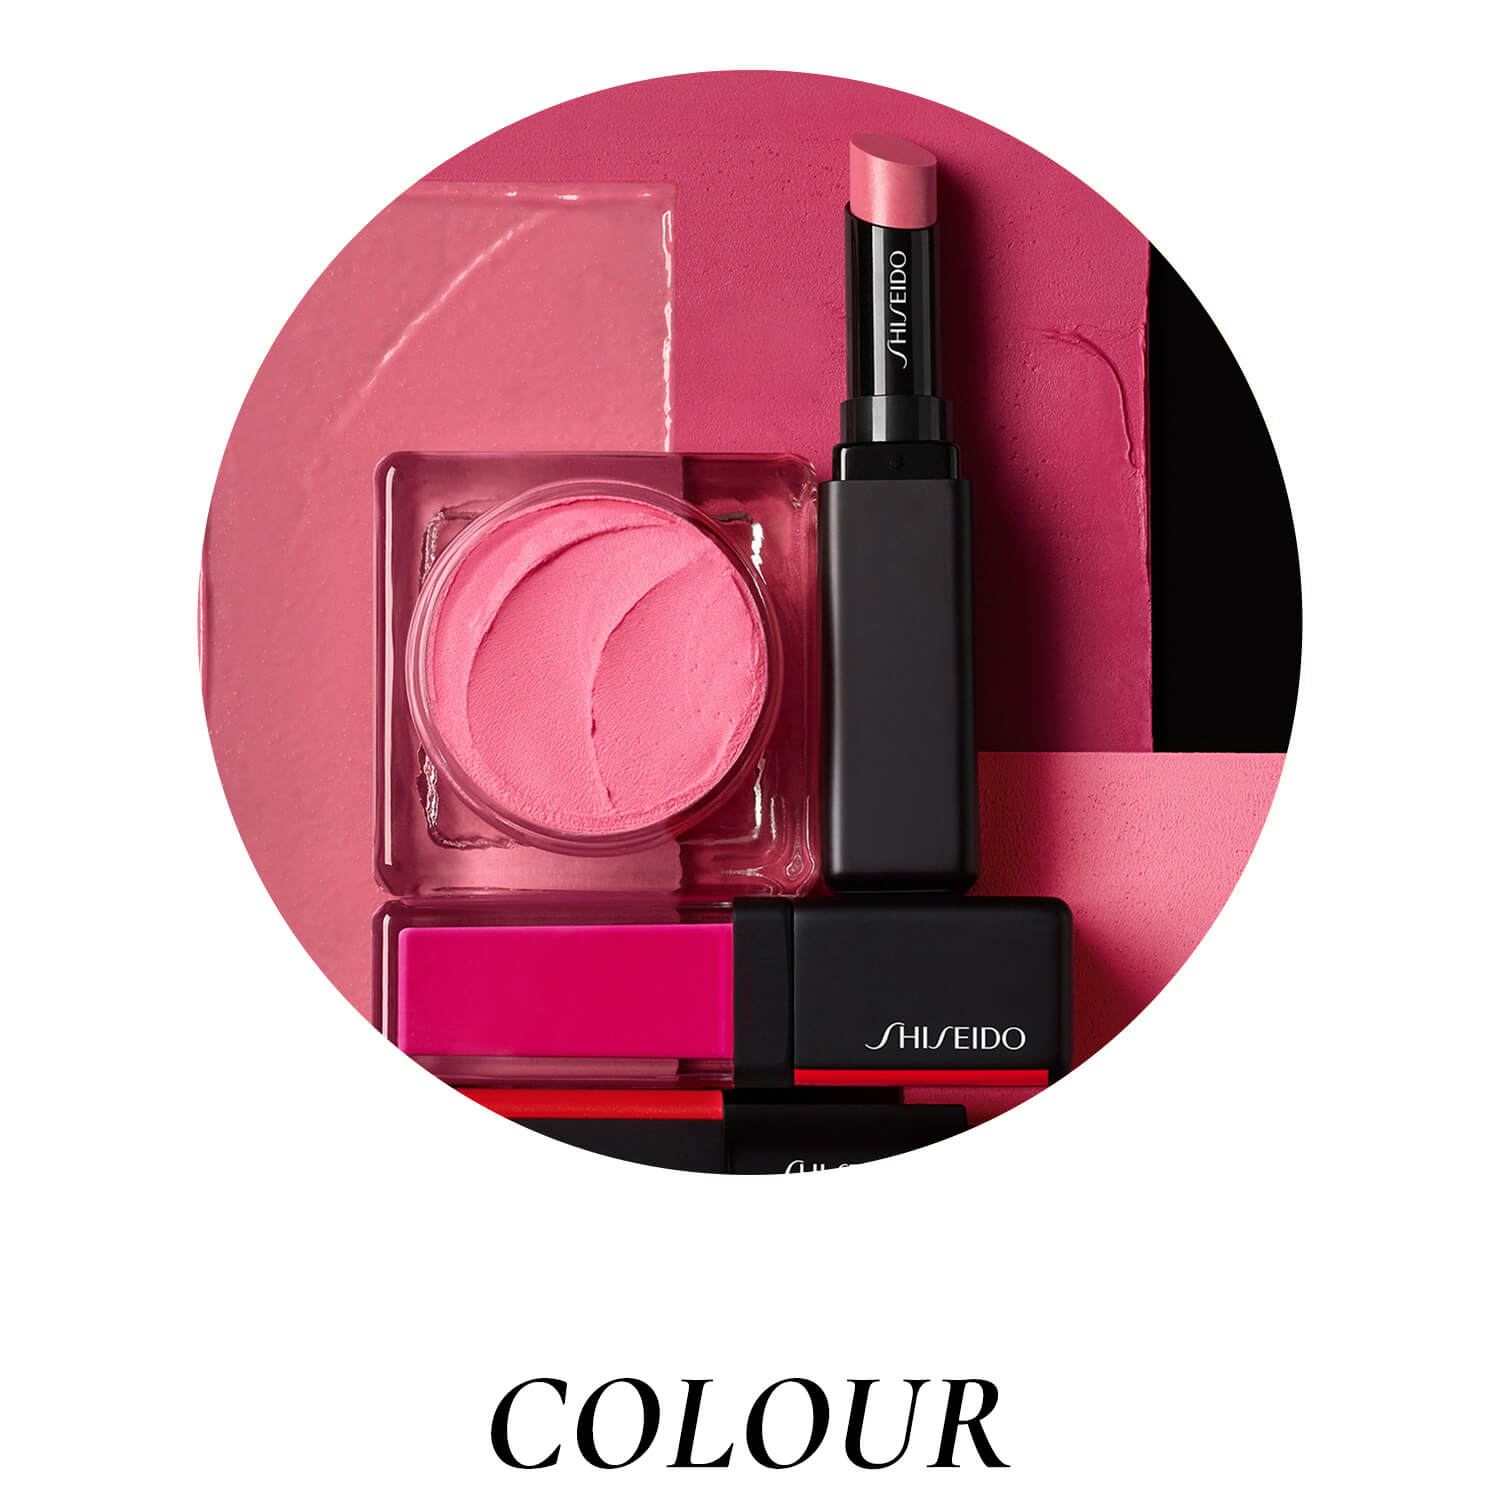 Shiseido Colour